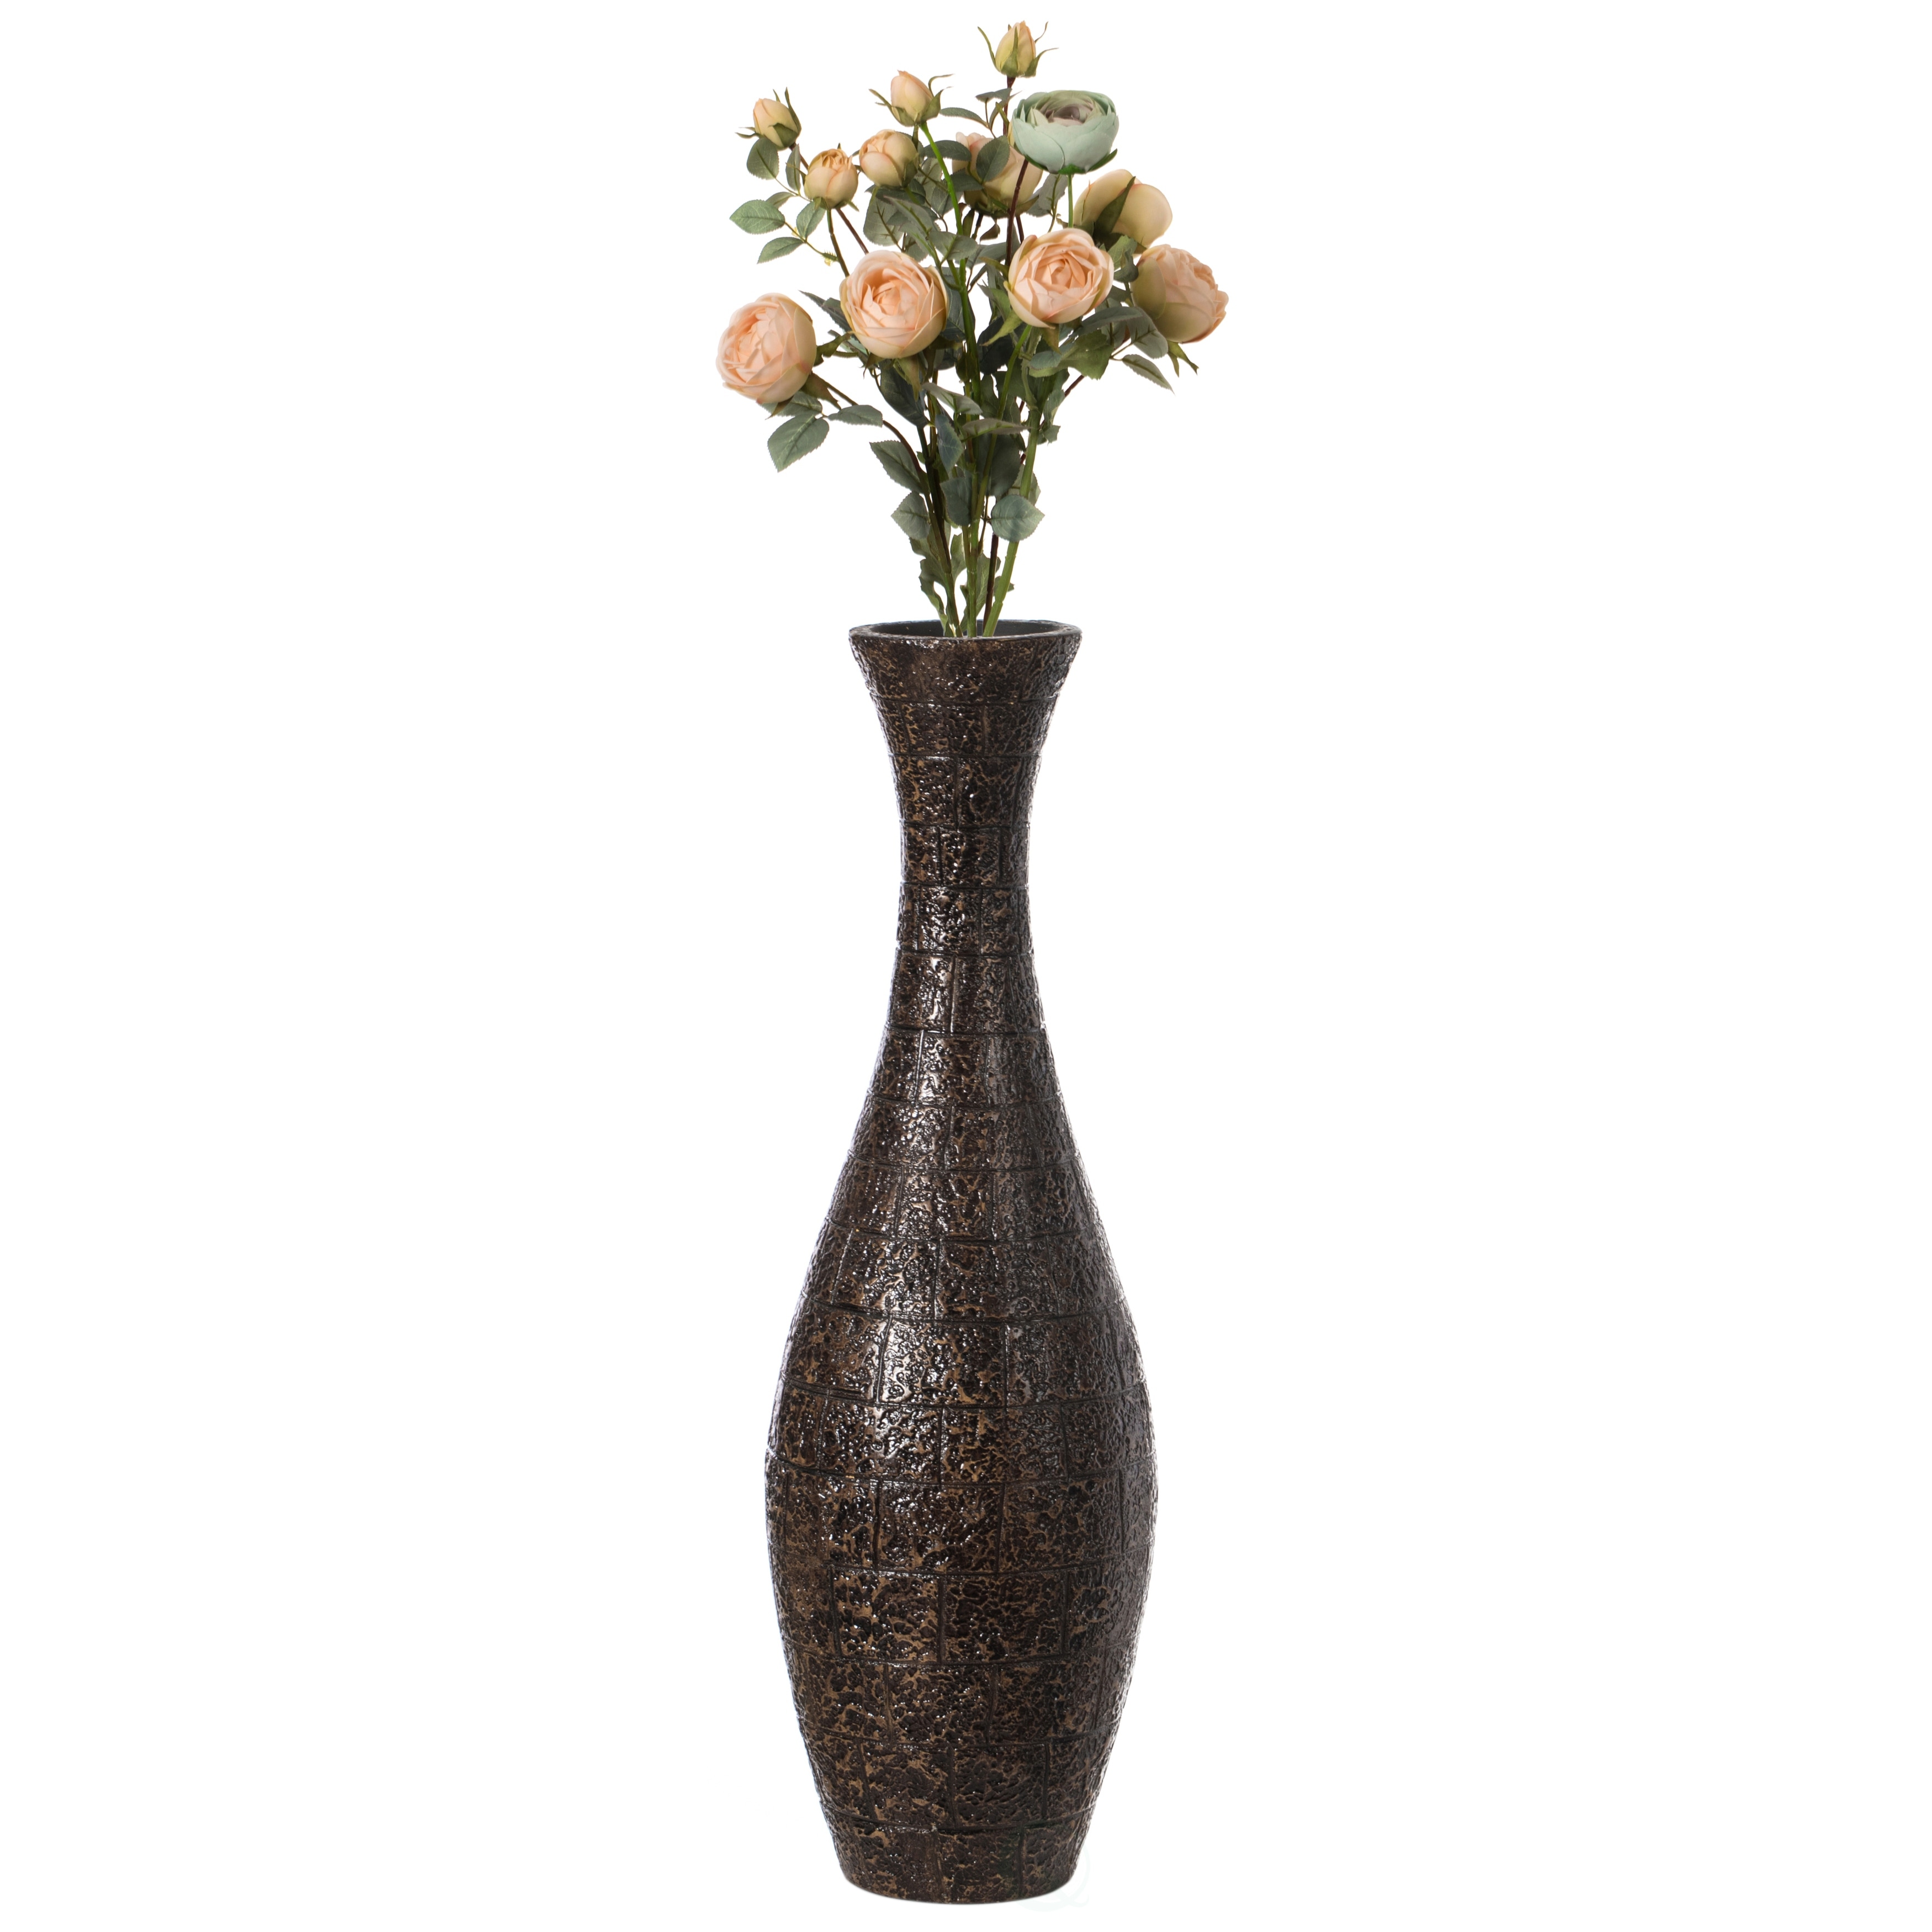 2PC Decorative Ceramic Tall Vase Modern Elegant Floor Flower Vase for Home Decor